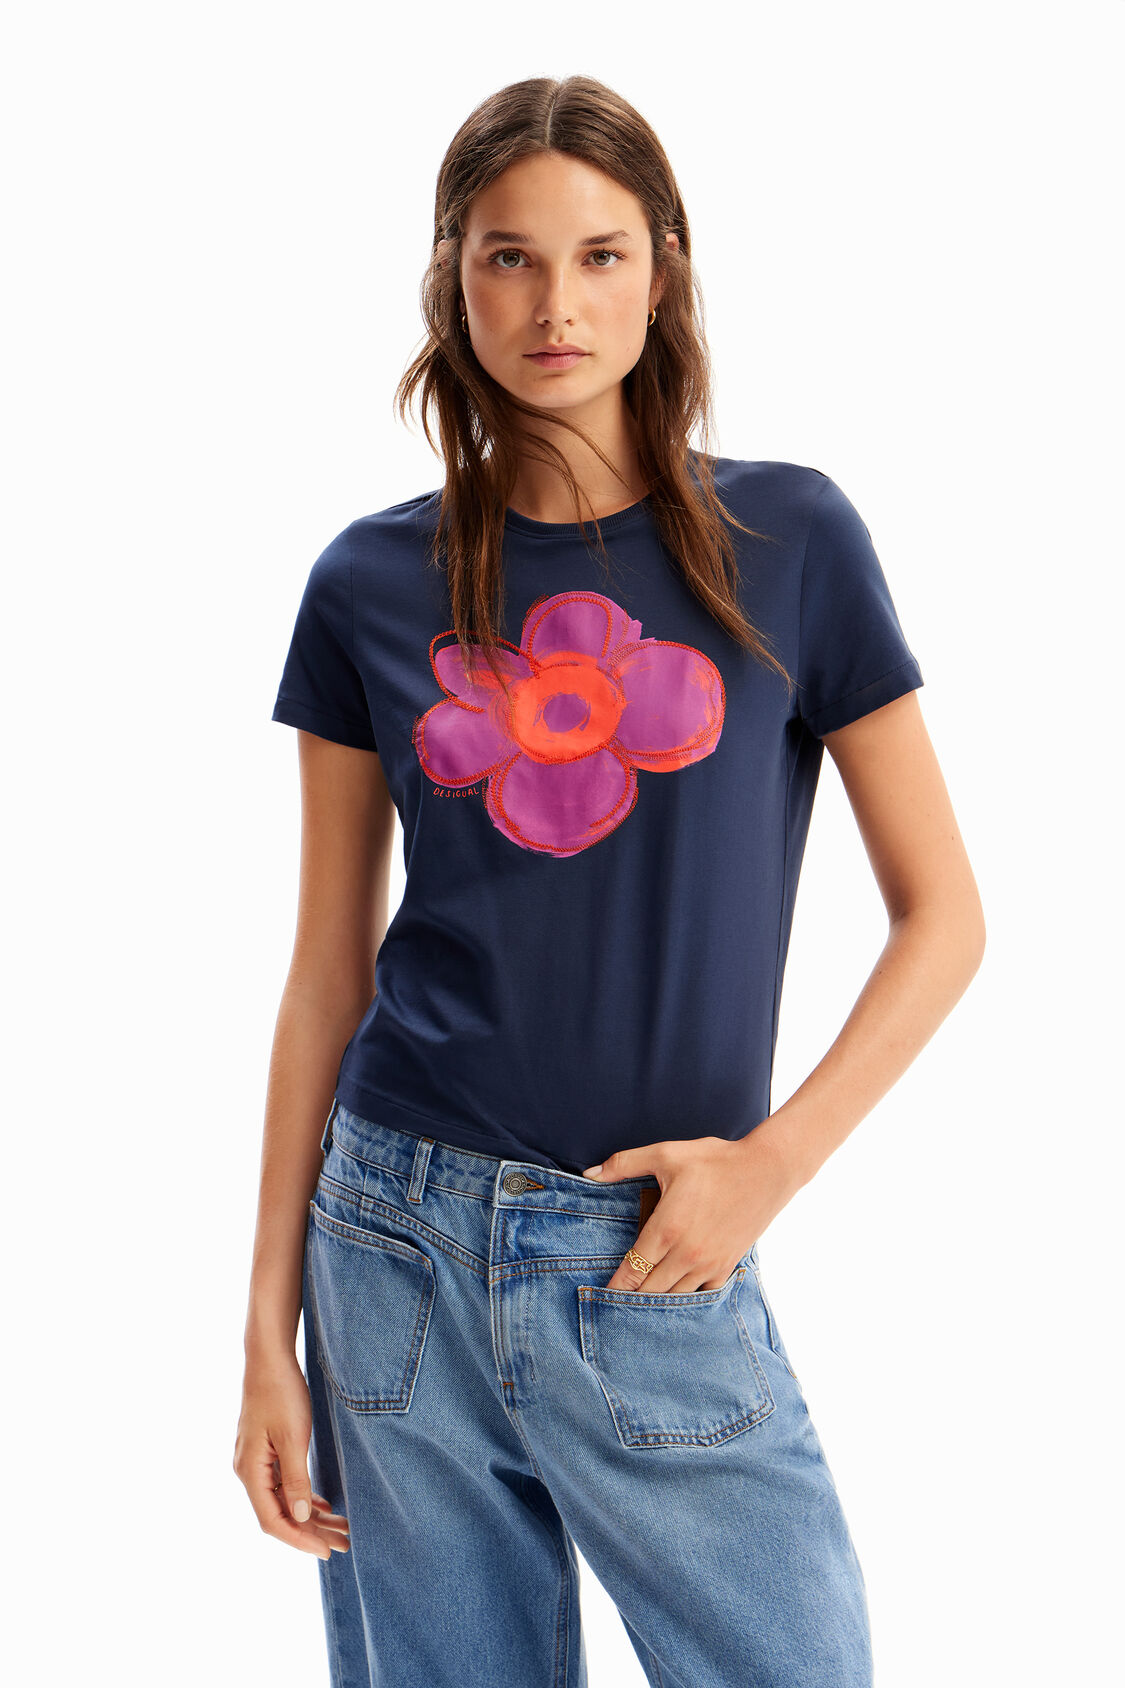 T-shirt ilustração flor de mujer I